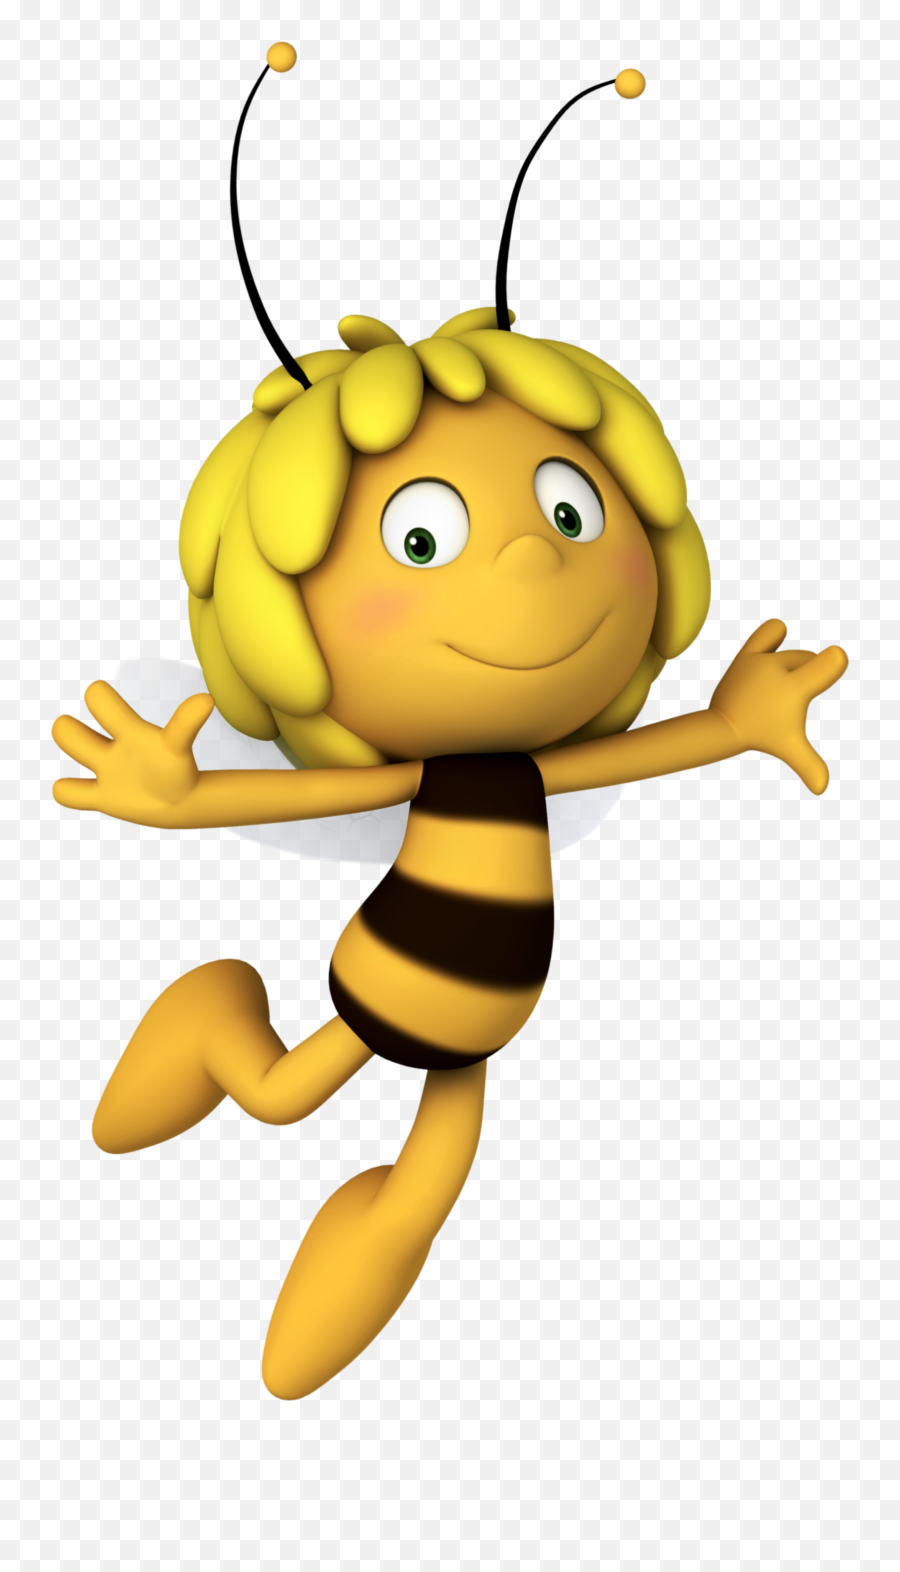 Maya The Bee Png Image - Maya The Bee Png,Honey Bee Png